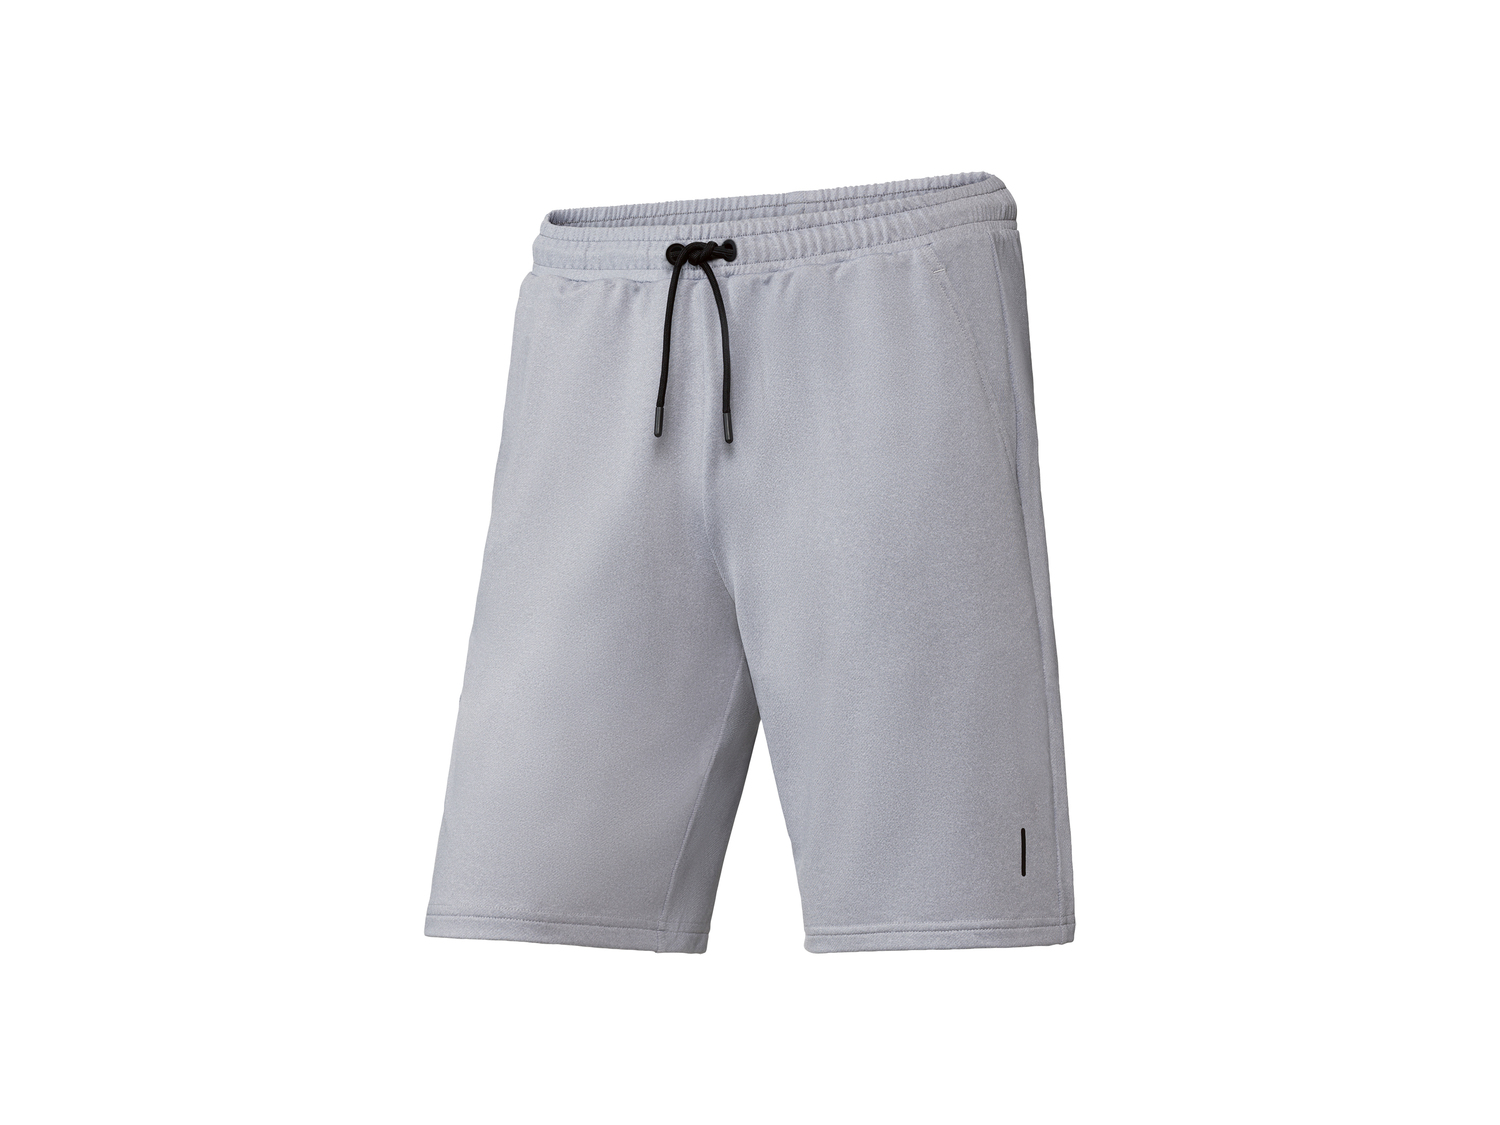 Shorts sportivi da uomo Crivit, prezzo 7.99 &#8364; 
Misure: S-XL 
- Prodotto ...